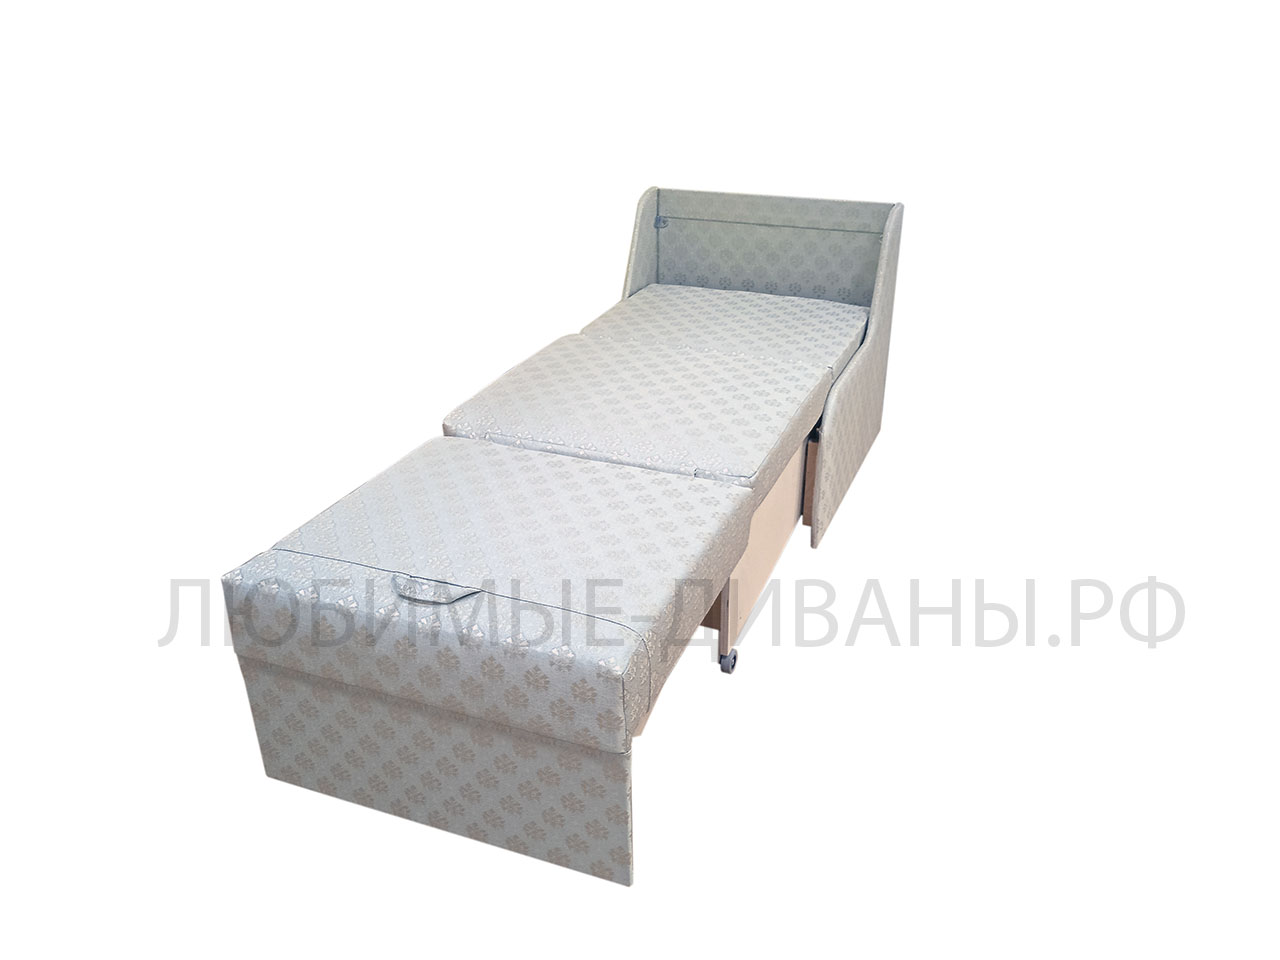 Мини кресло кровать Танго-4 Д-60 глубиной 65 см. Габаритный размер 65 х 65 см. Спальное место 60 х 160 см.